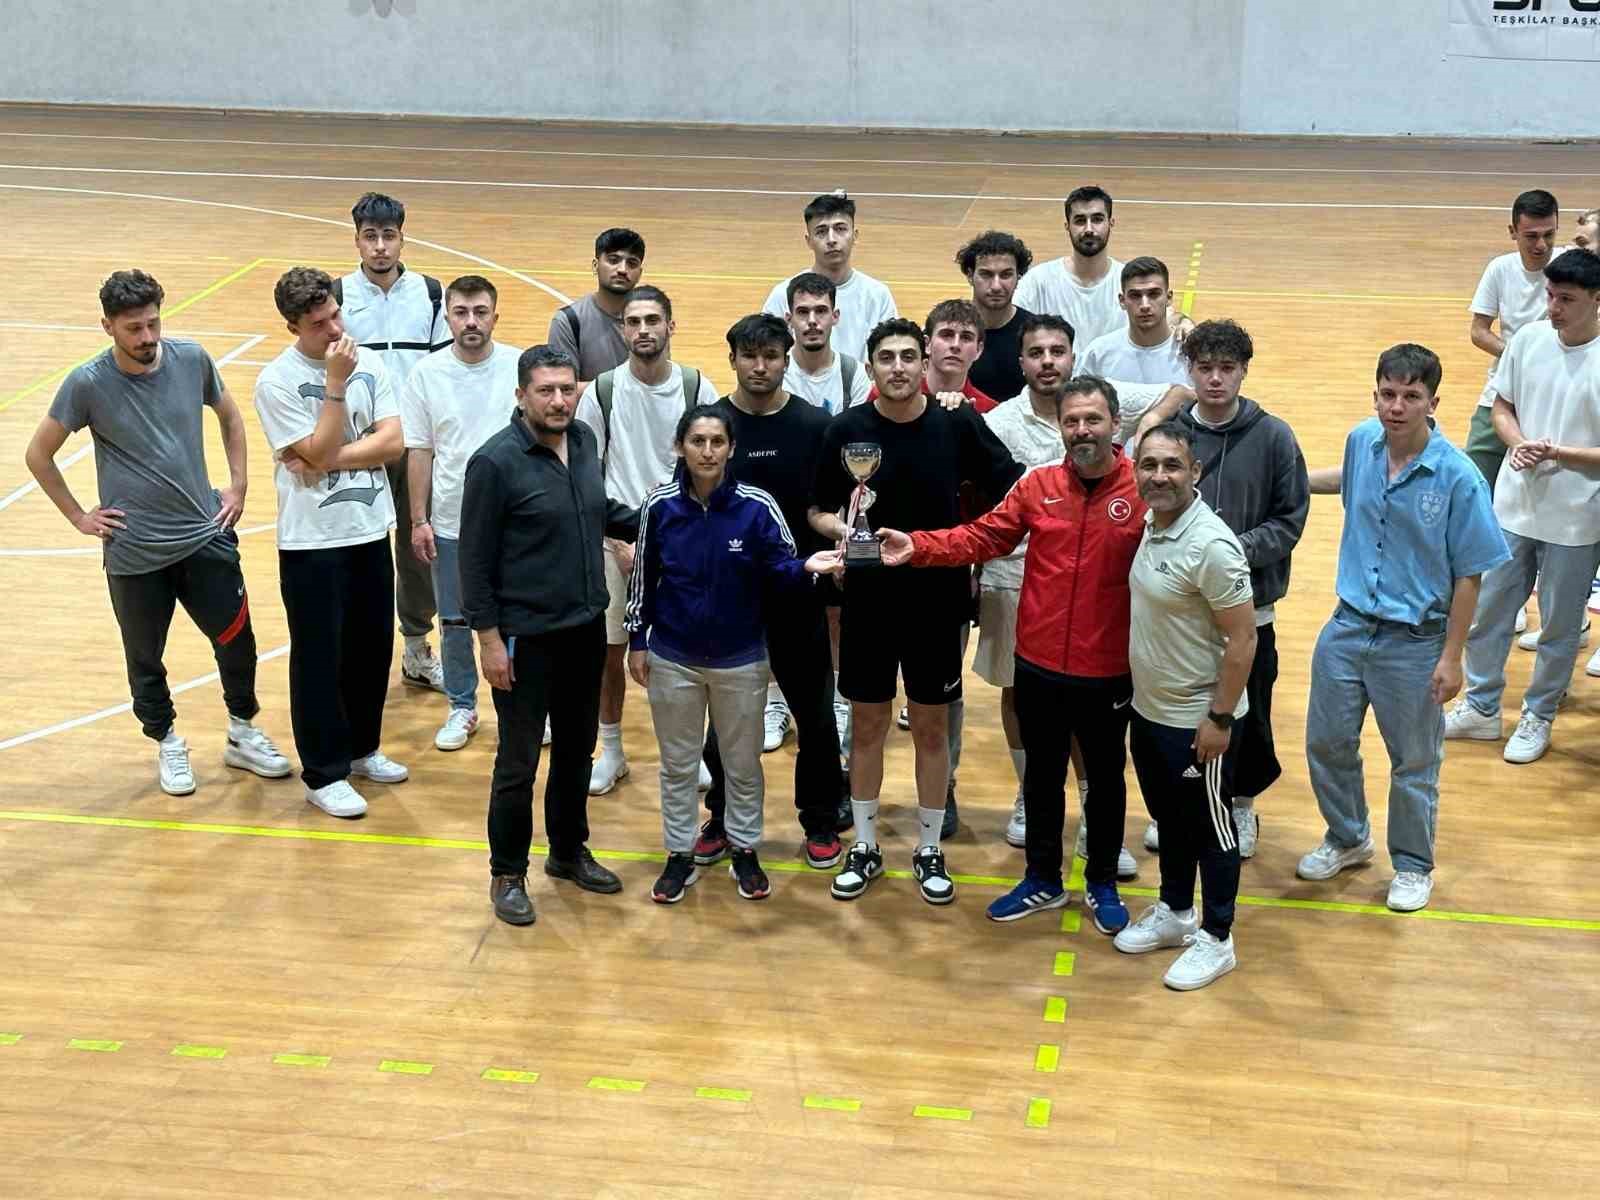 ZBEÜ’de Üniversiteler Arası Salon Futbolu Bölgesel Lig Grup Müsabakaları sona erdi
